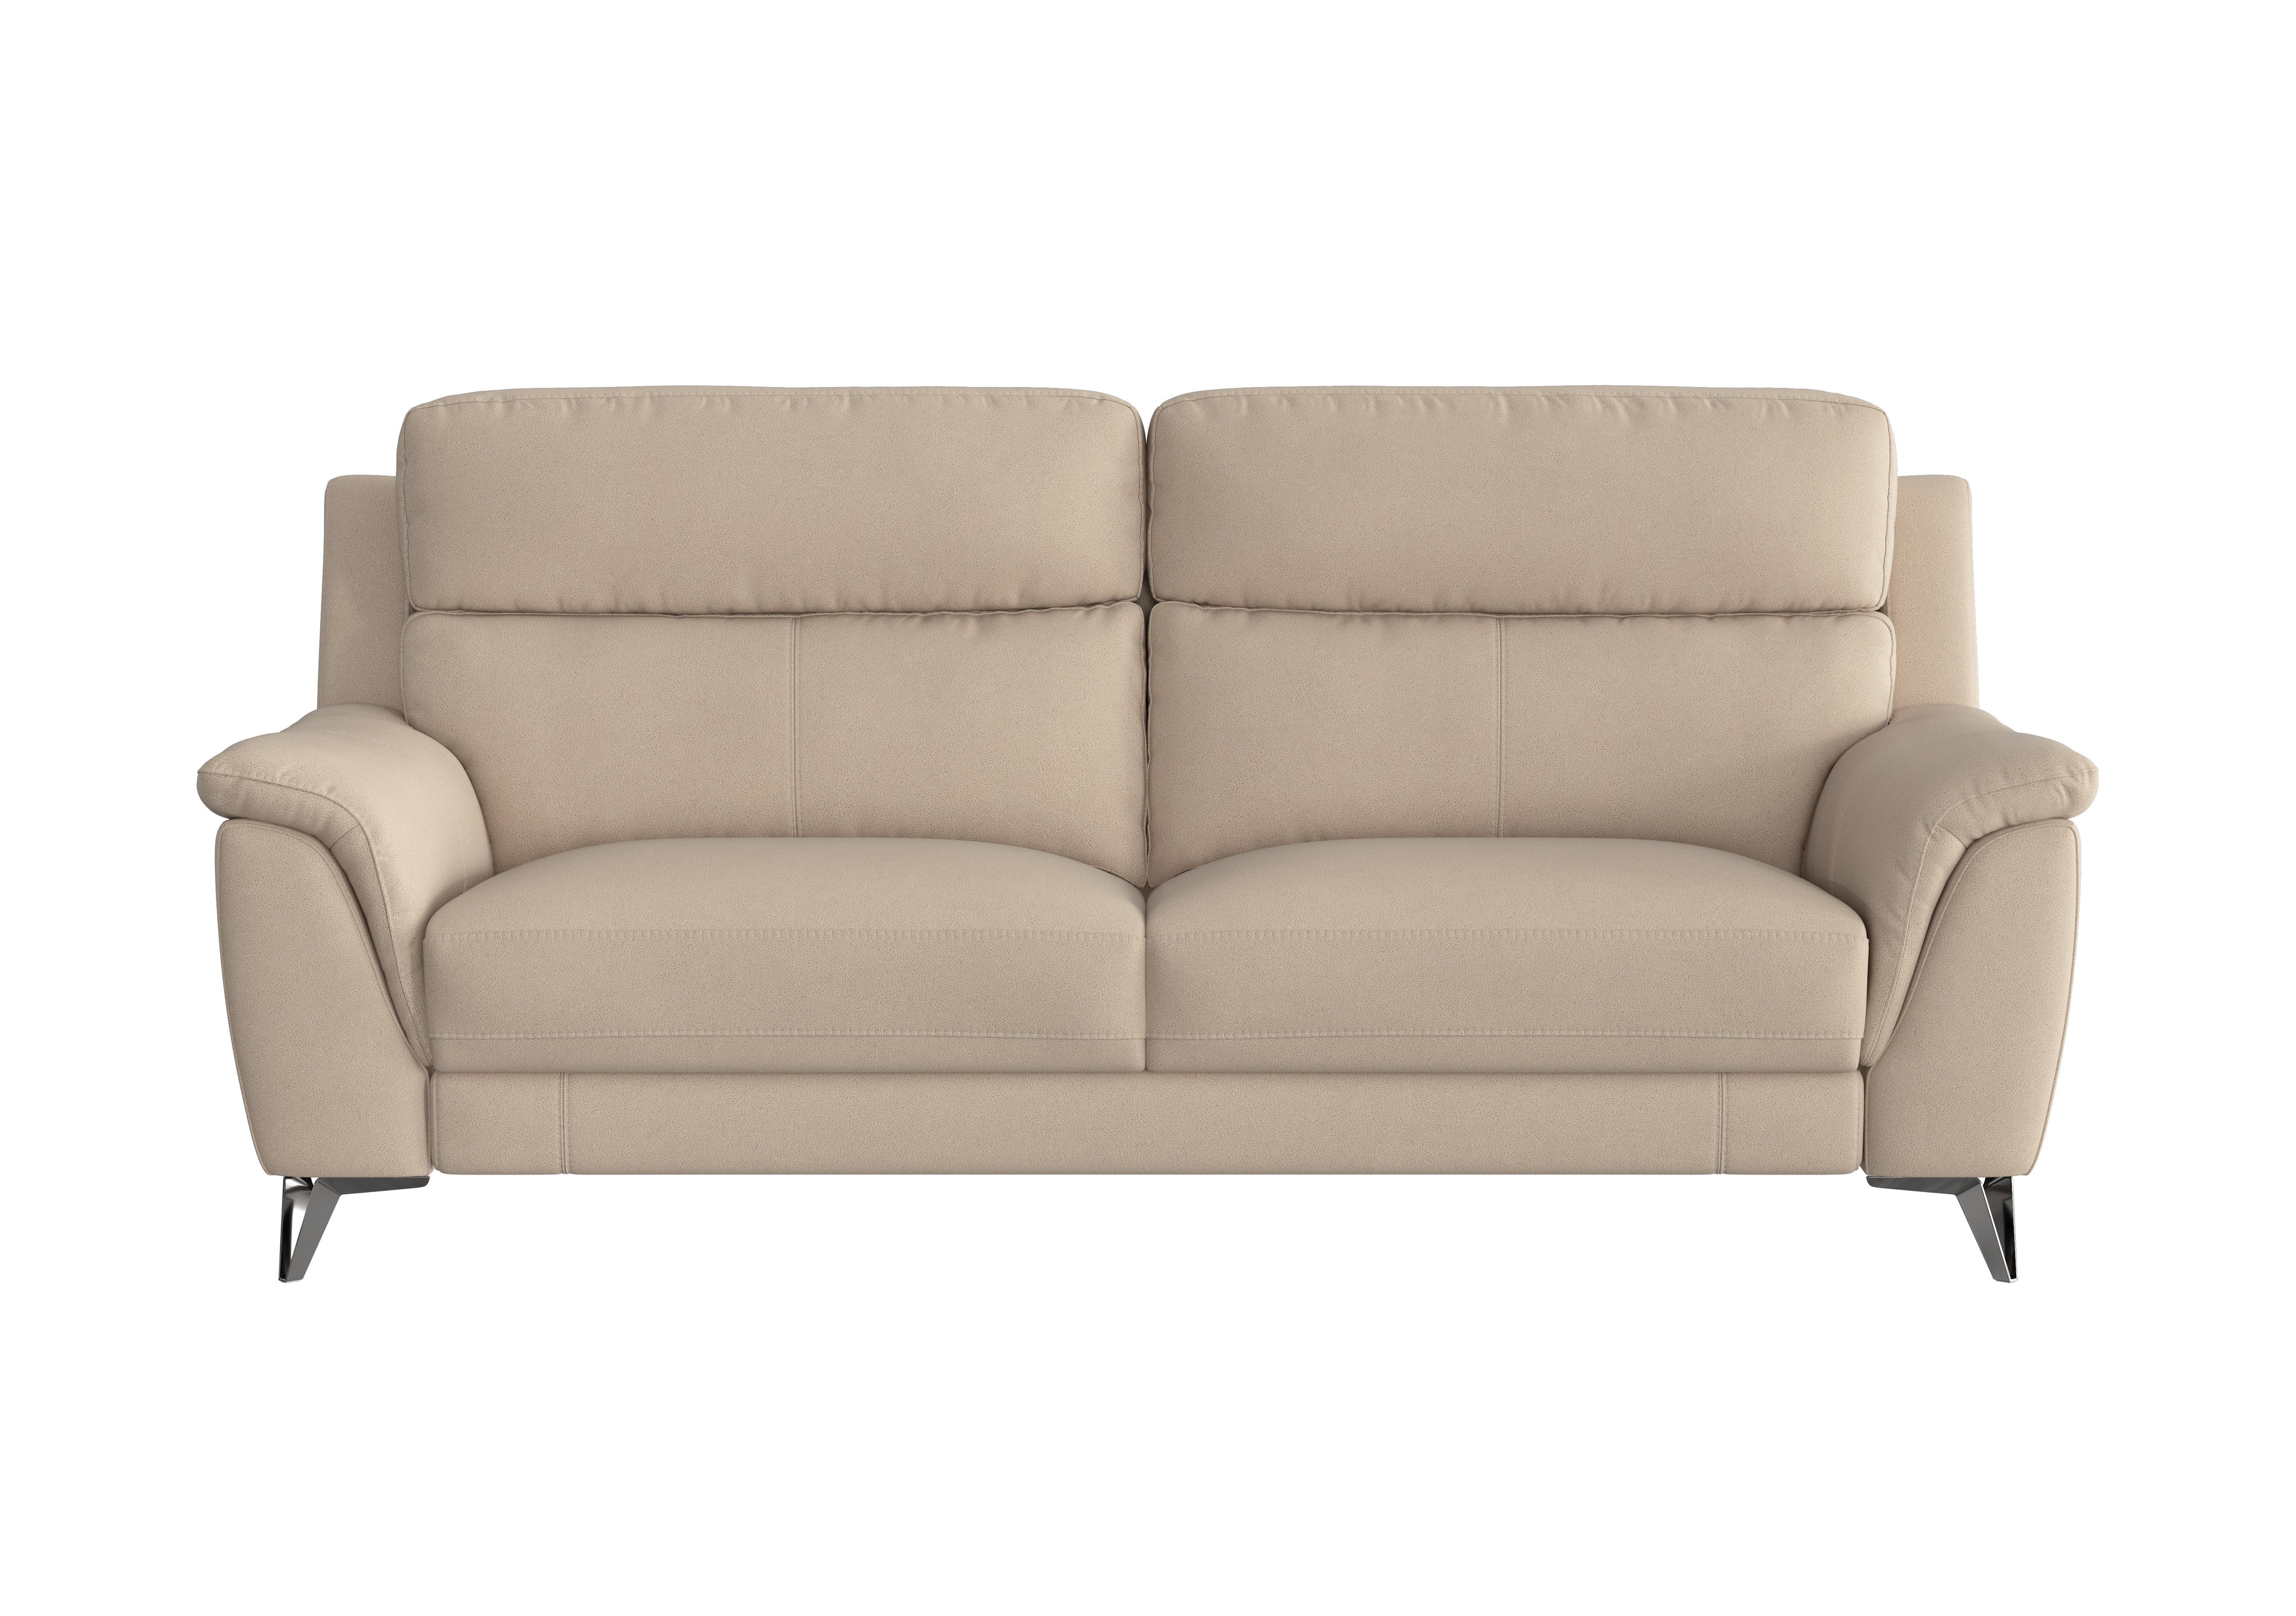 Contempo 3 Seater Fabric Sofa in Bfa-Blj-R20 Bisque on Furniture Village